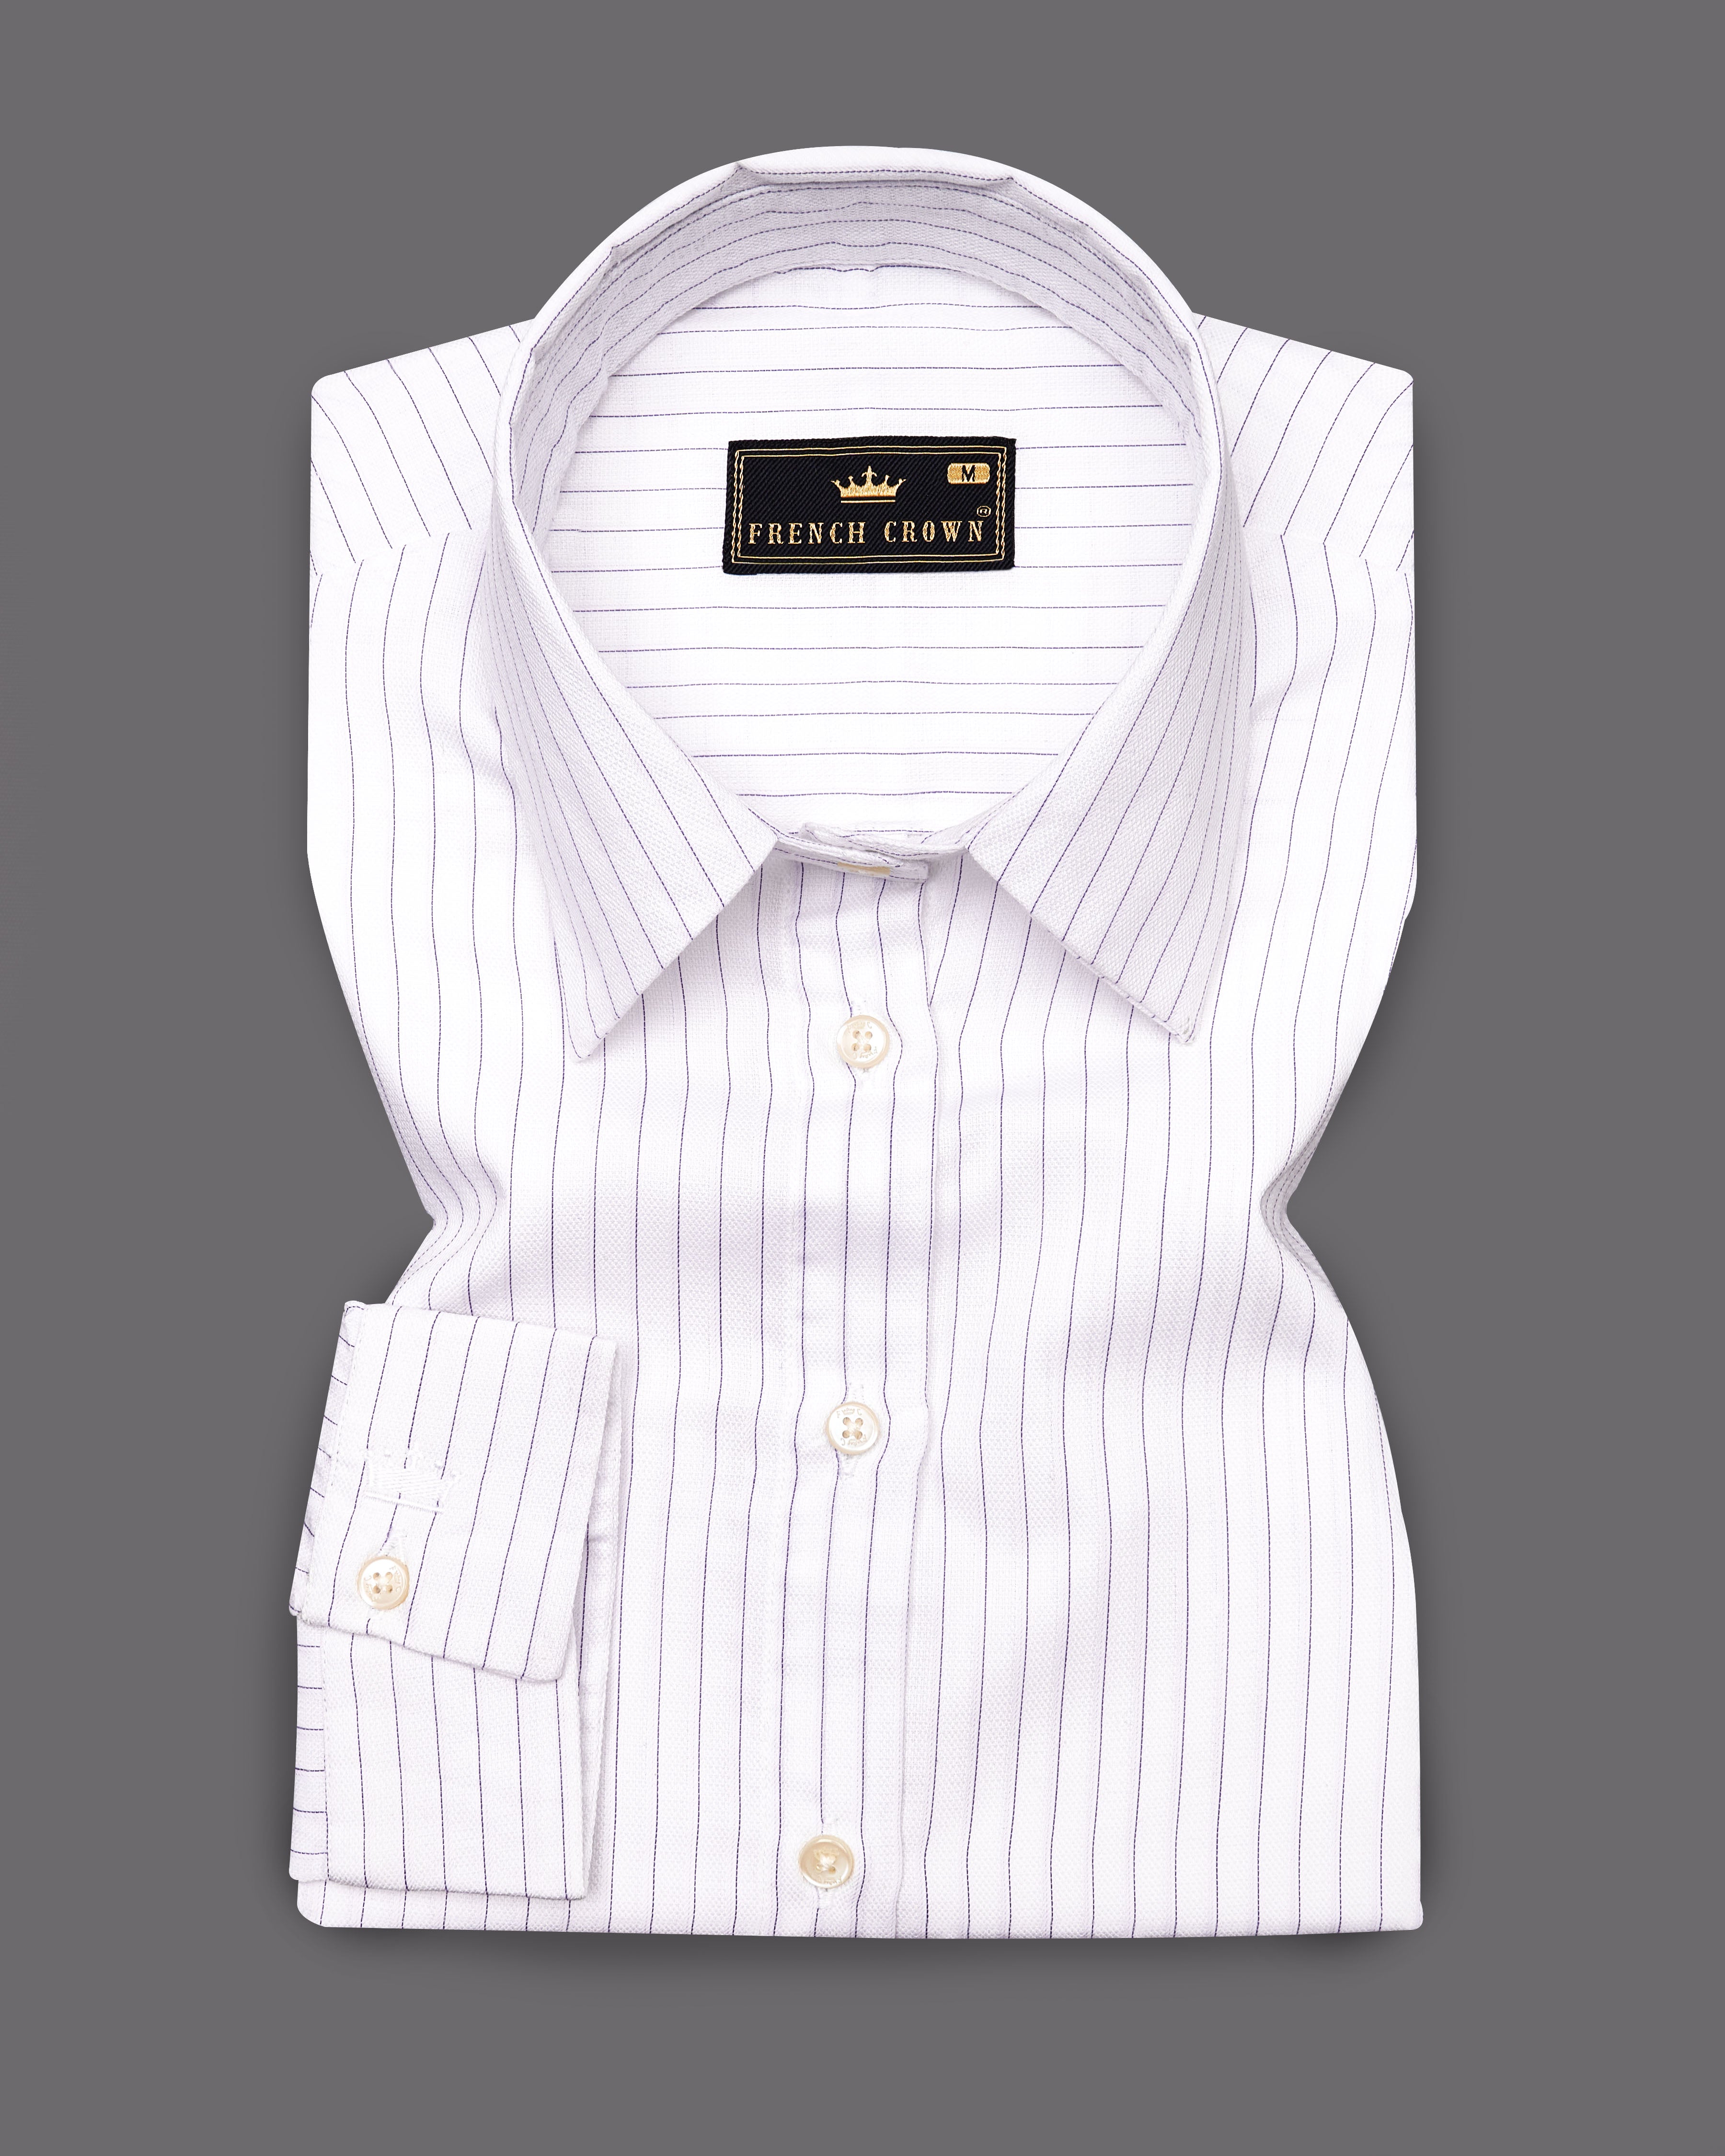 Bright White Striped Premium Cotton Shirt WS030-32, WS030-34, WS030-36, WS030-38, WS030-40, WS030-42